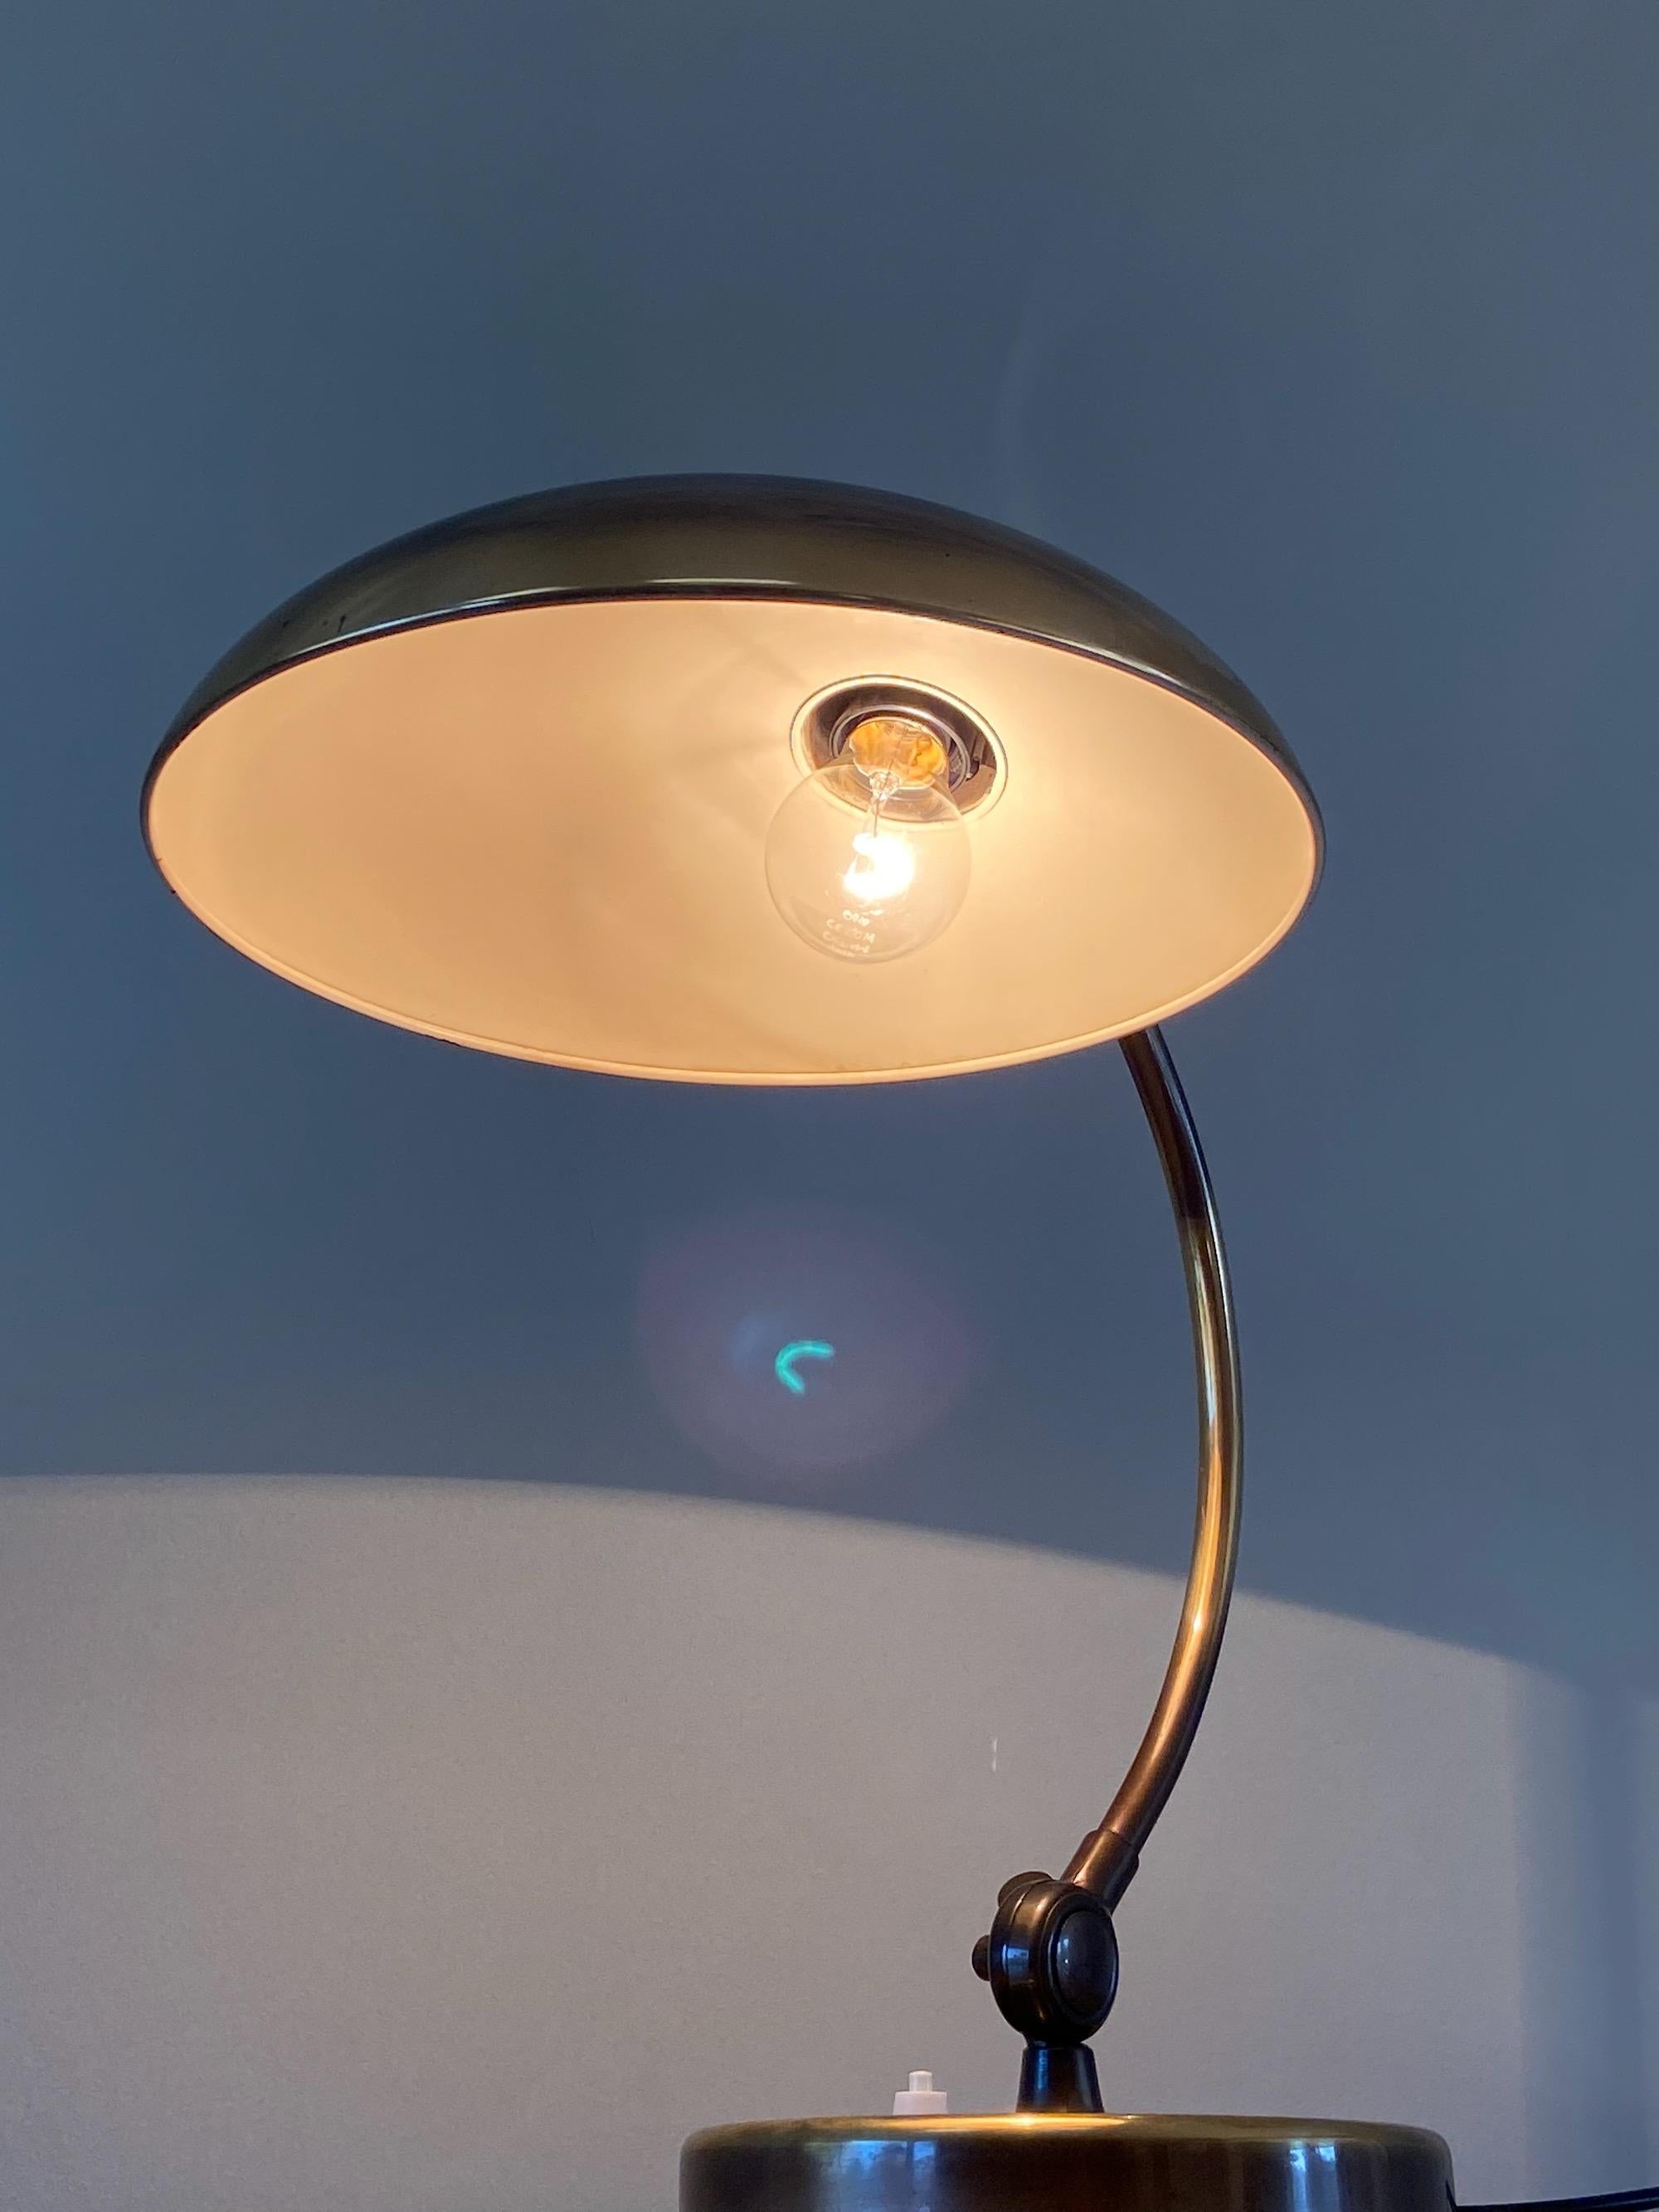 Christian Dell Brass Table Lamp 6631 Desk Lamp by Kaiser Idell Bauhaus, Germany 5